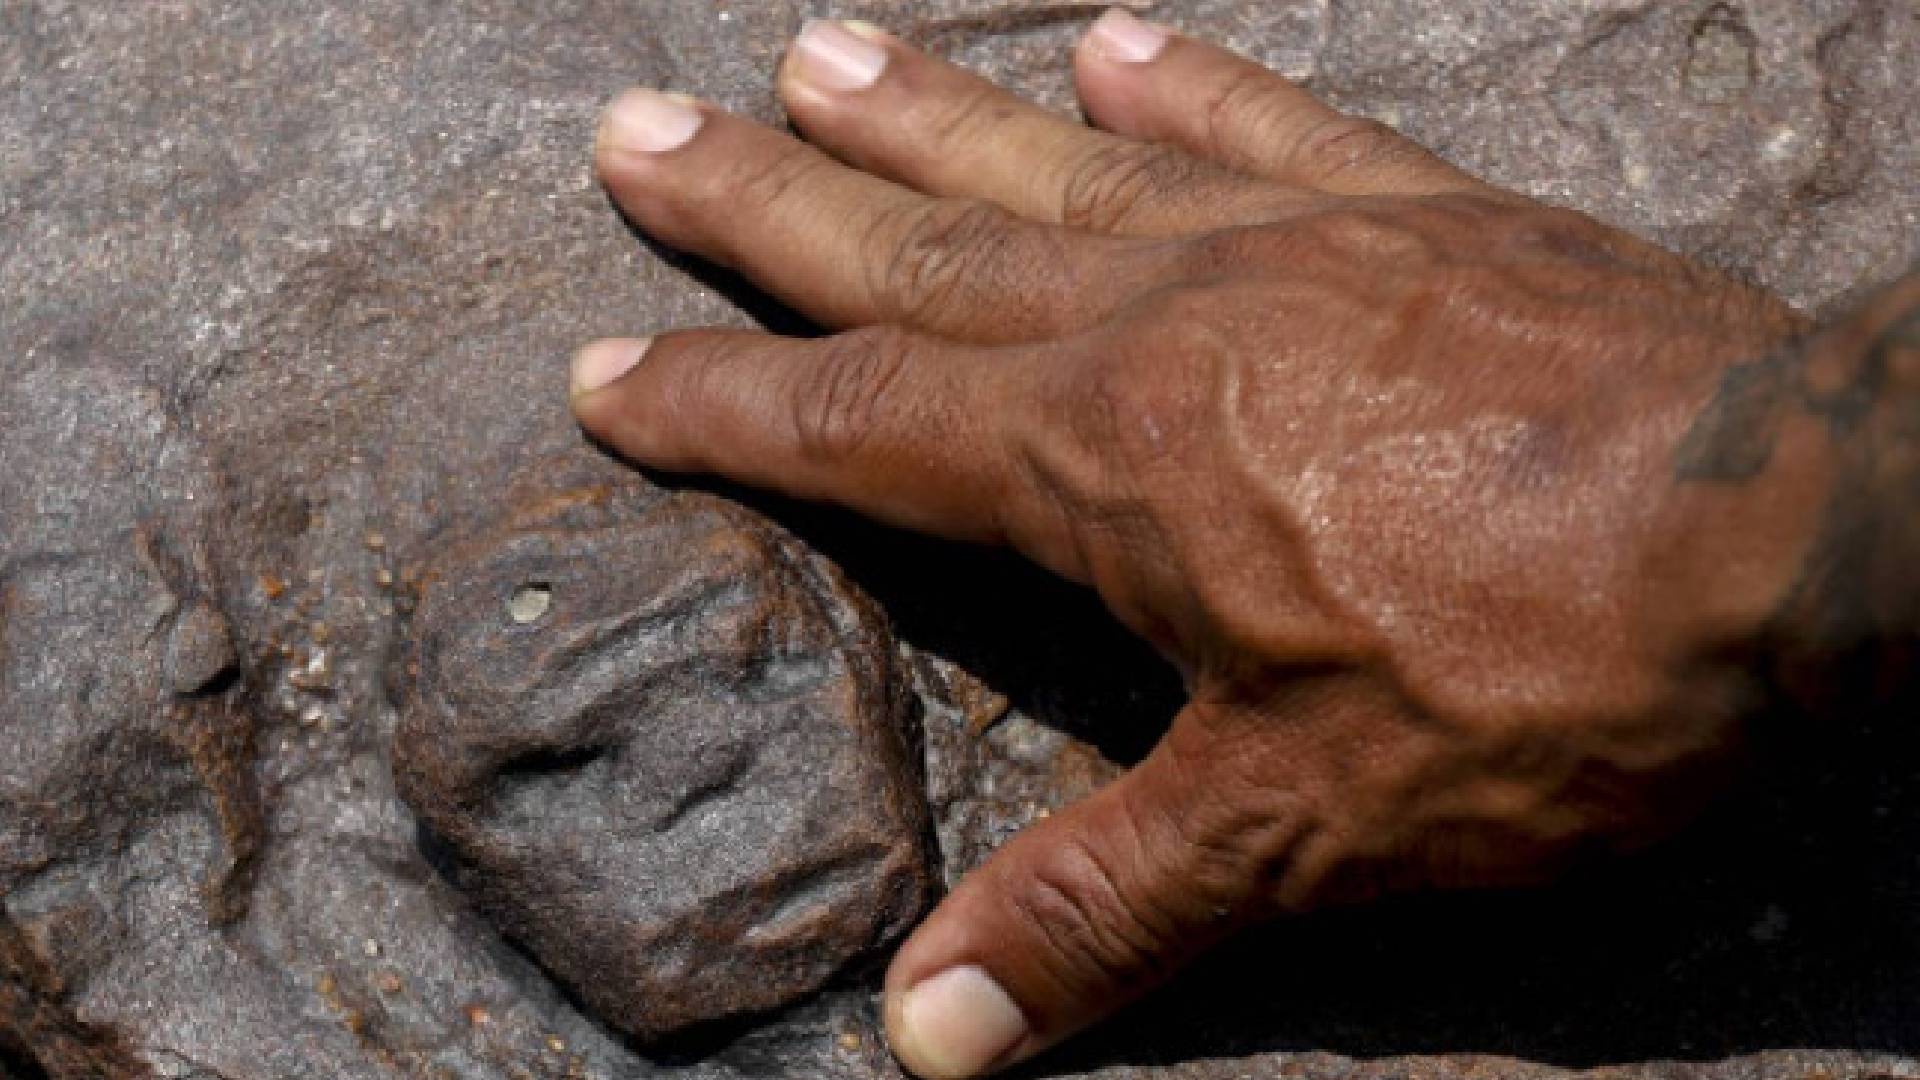 Descubren grabados rupestres en Amazonía debido a sequía extrema.